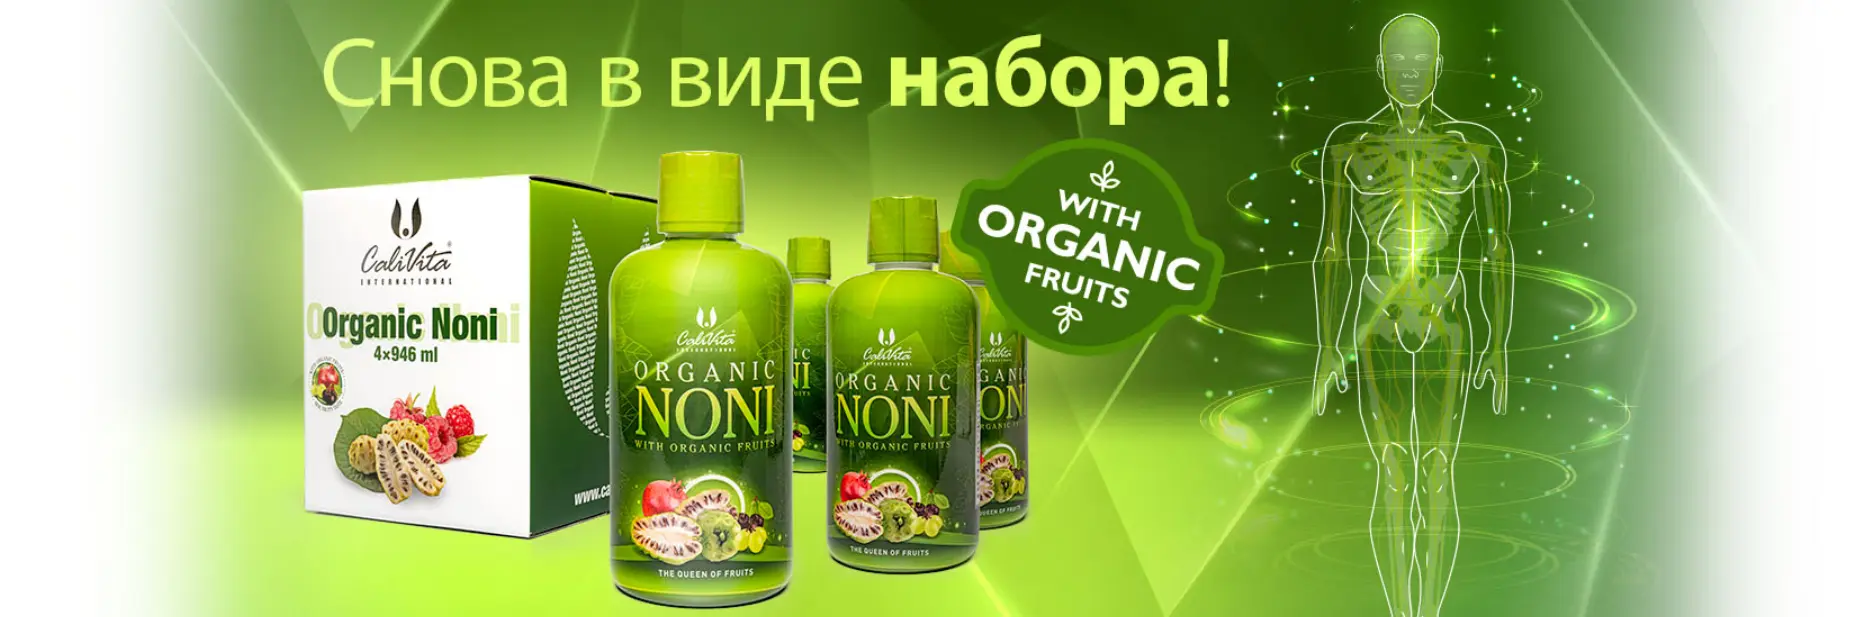 Organic Noni - продвижение